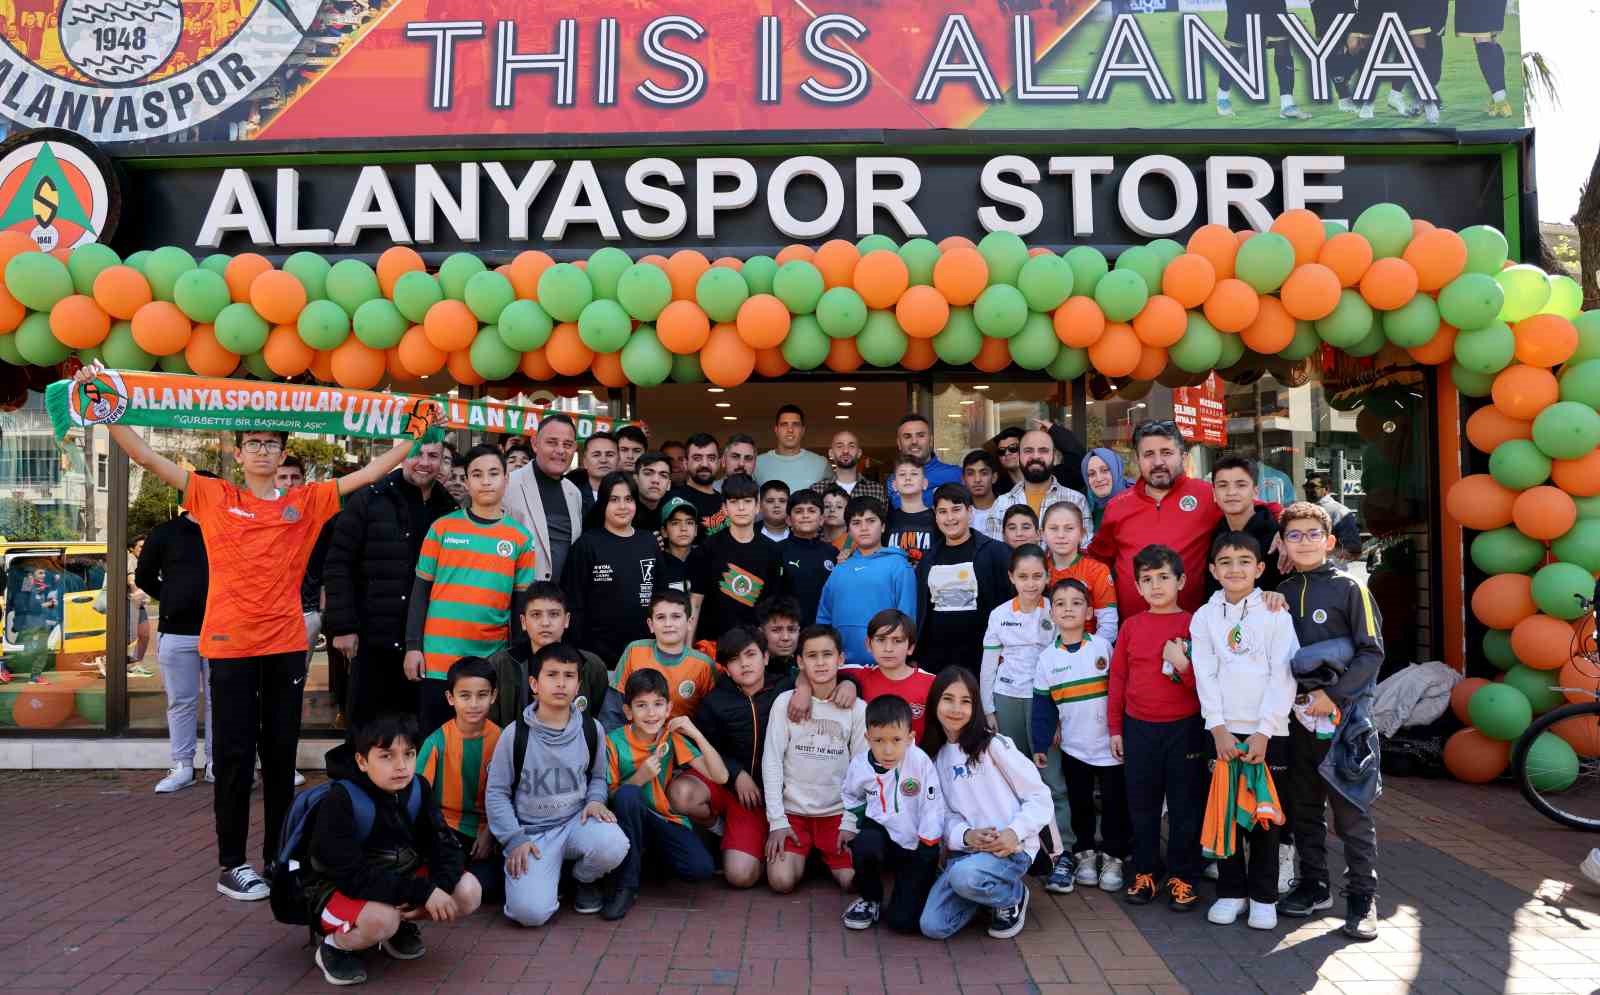 Alanyasporlu futbolcular Efecan ve Novais imza gününe katıldı
